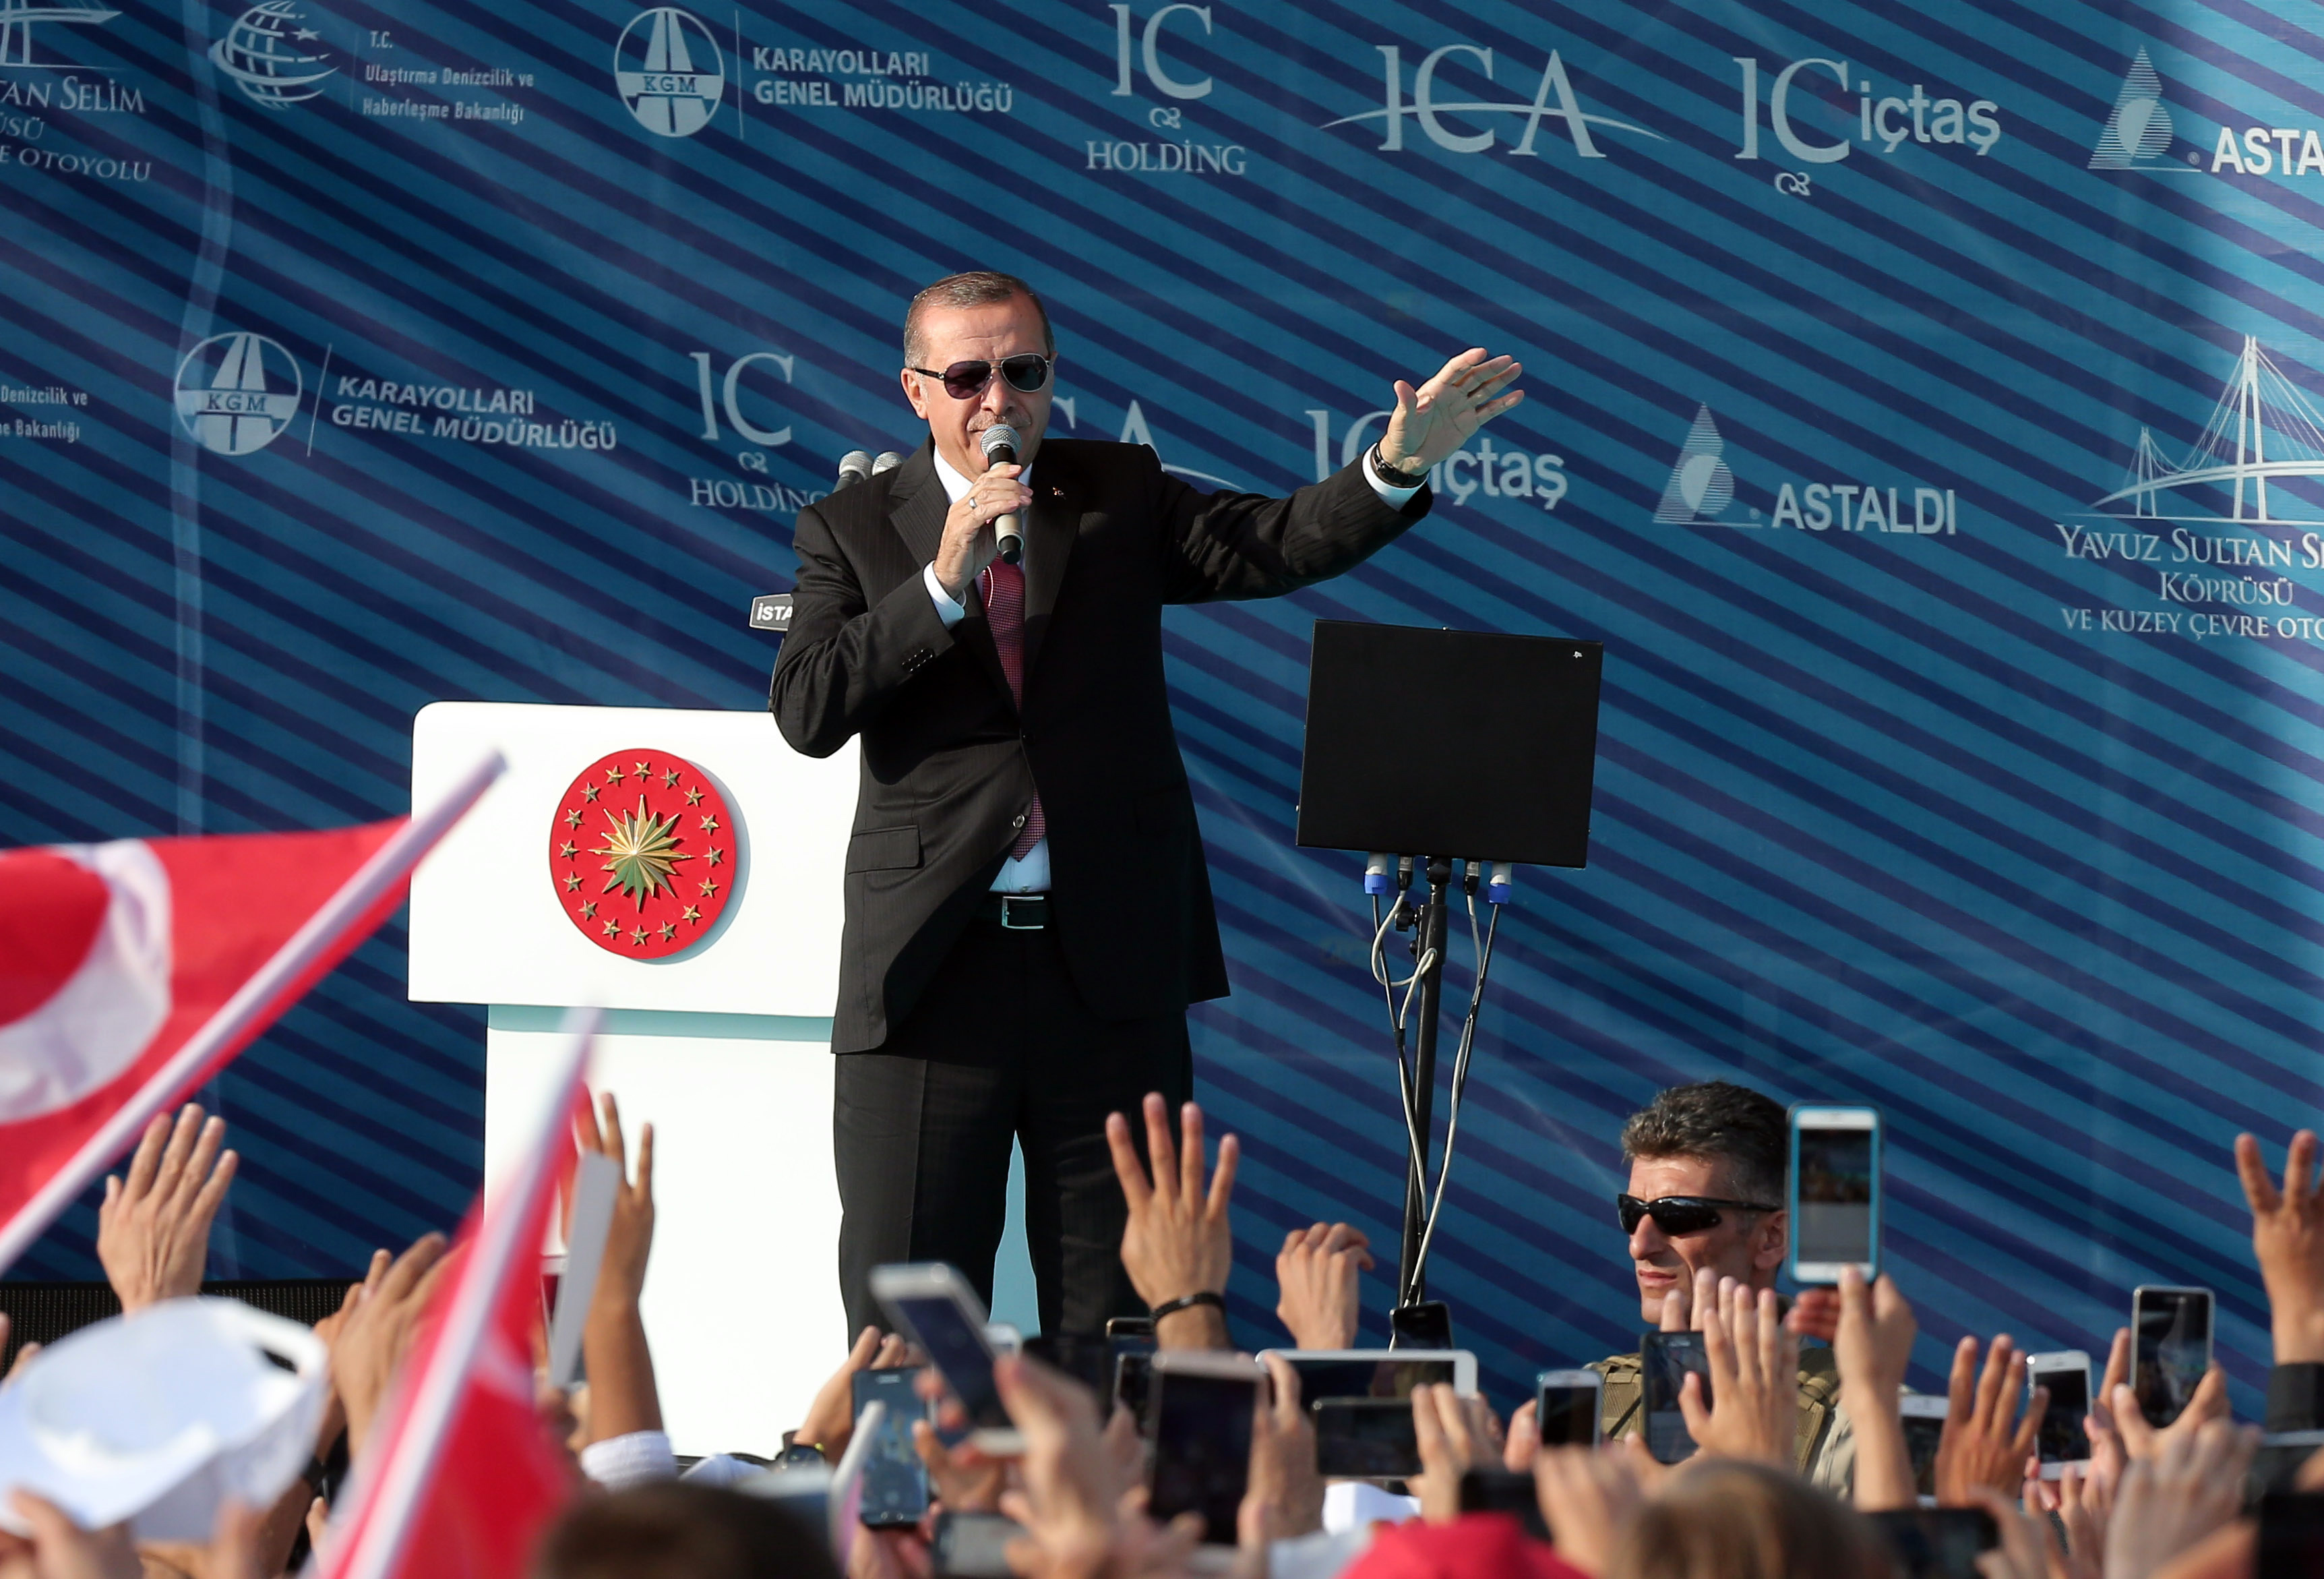 Достигането на нивото на цивилизована нация не е възможно с думи, а с действия, каза Ердоган